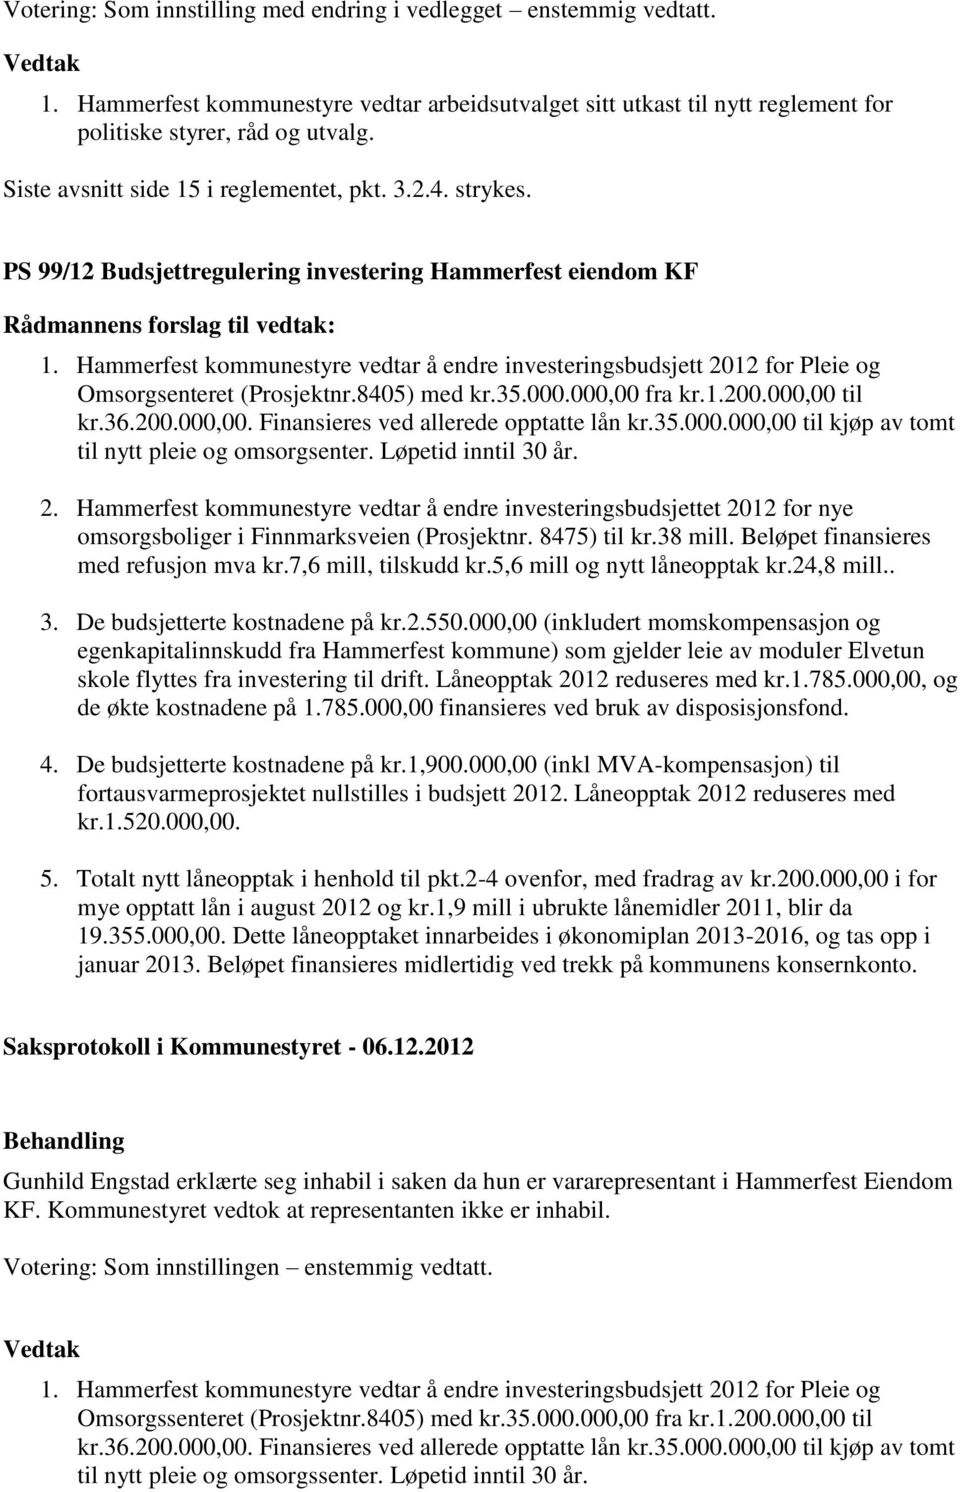 Hammerfest kommunestyre vedtar å endre investeringsbudsjett 2012 for Pleie og Omsorgsenteret (Prosjektnr.8405) med kr.35.000.000,00 fra kr.1.200.000,00 til kr.36.200.000,00. Finansieres ved allerede opptatte lån kr.